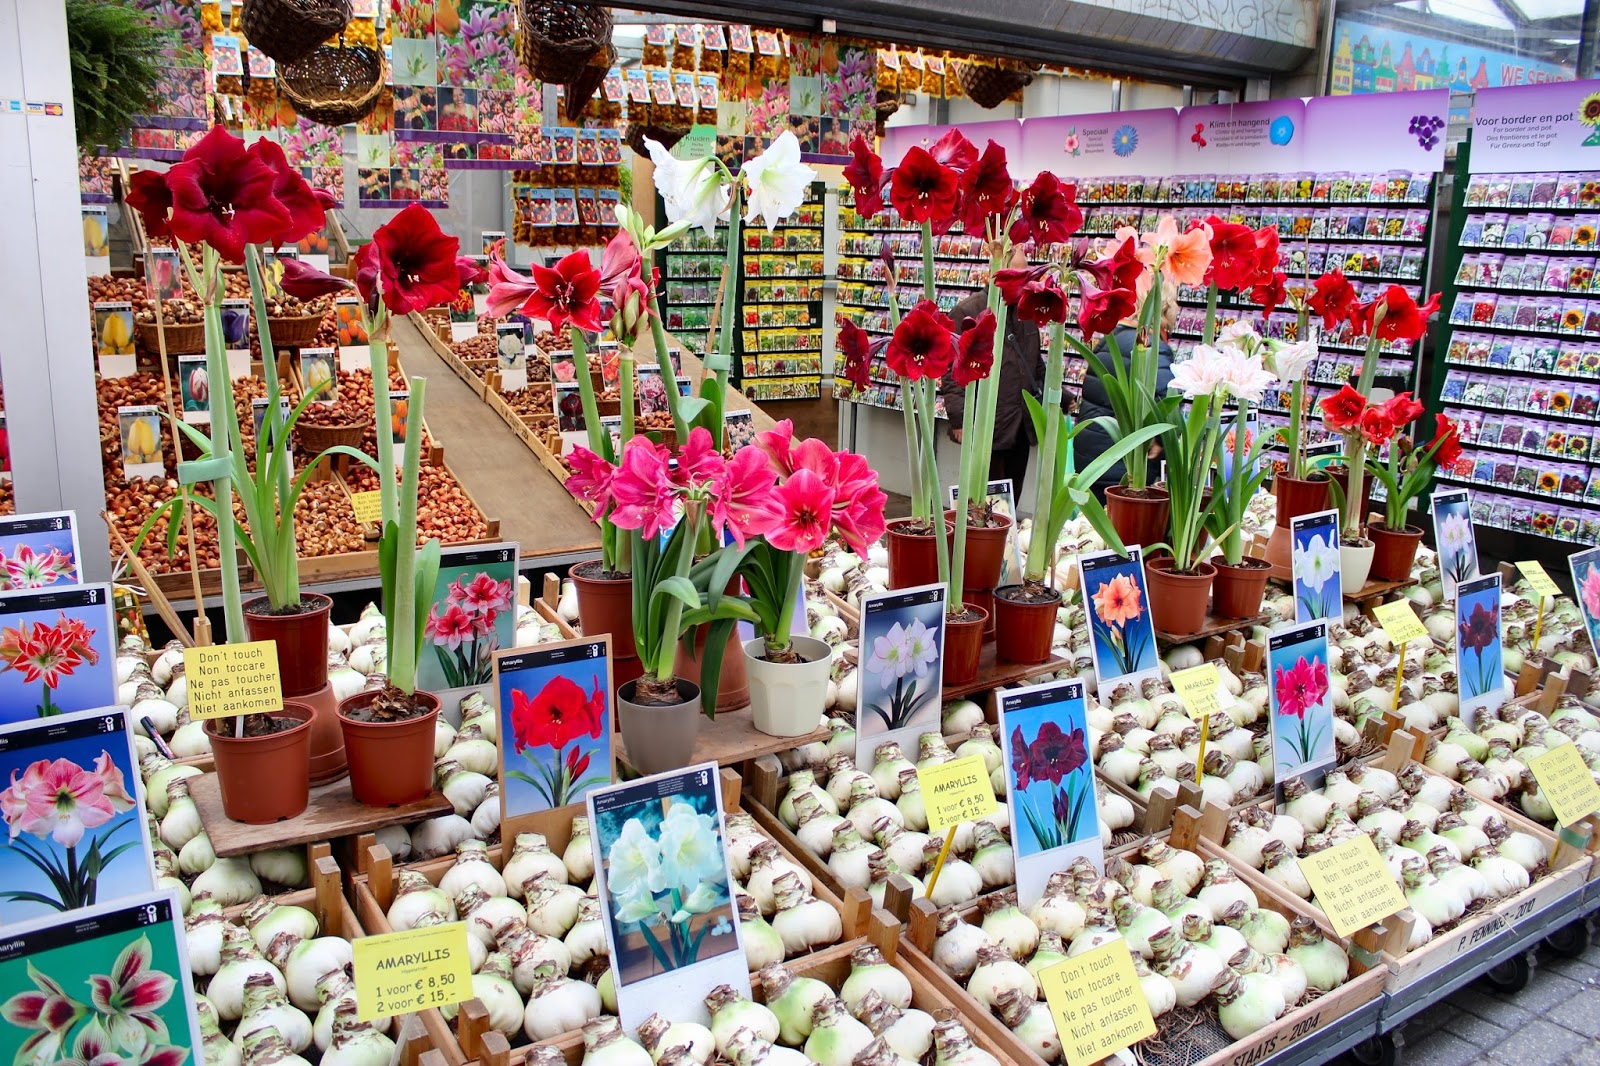 http://3.bp.blogspot.com/-X_tBsycBz2c/VfAVWQ8T4HI/AAAAAAAAFPQ/cJChblOWsxg/s1600/amsterdam-bloemen-market-stall-2.jpg